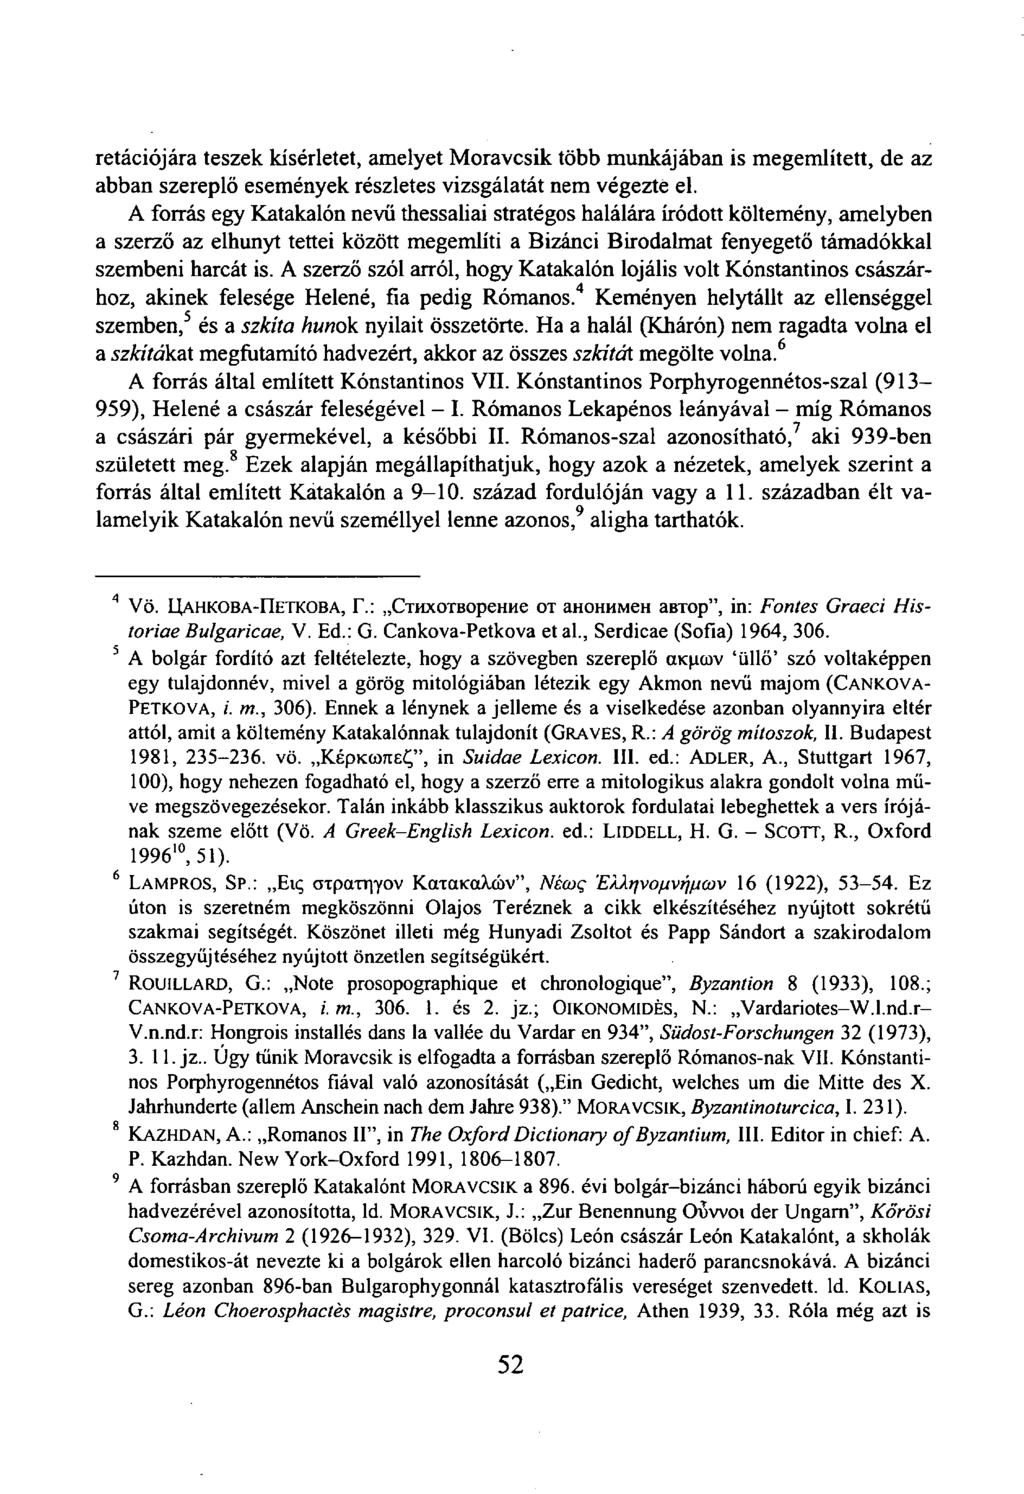 retációjára teszek kísérletet, amelyet Moravcsik több munkájában is megemlített, de az abban szereplő események részletes vizsgálatát nem végezte el.